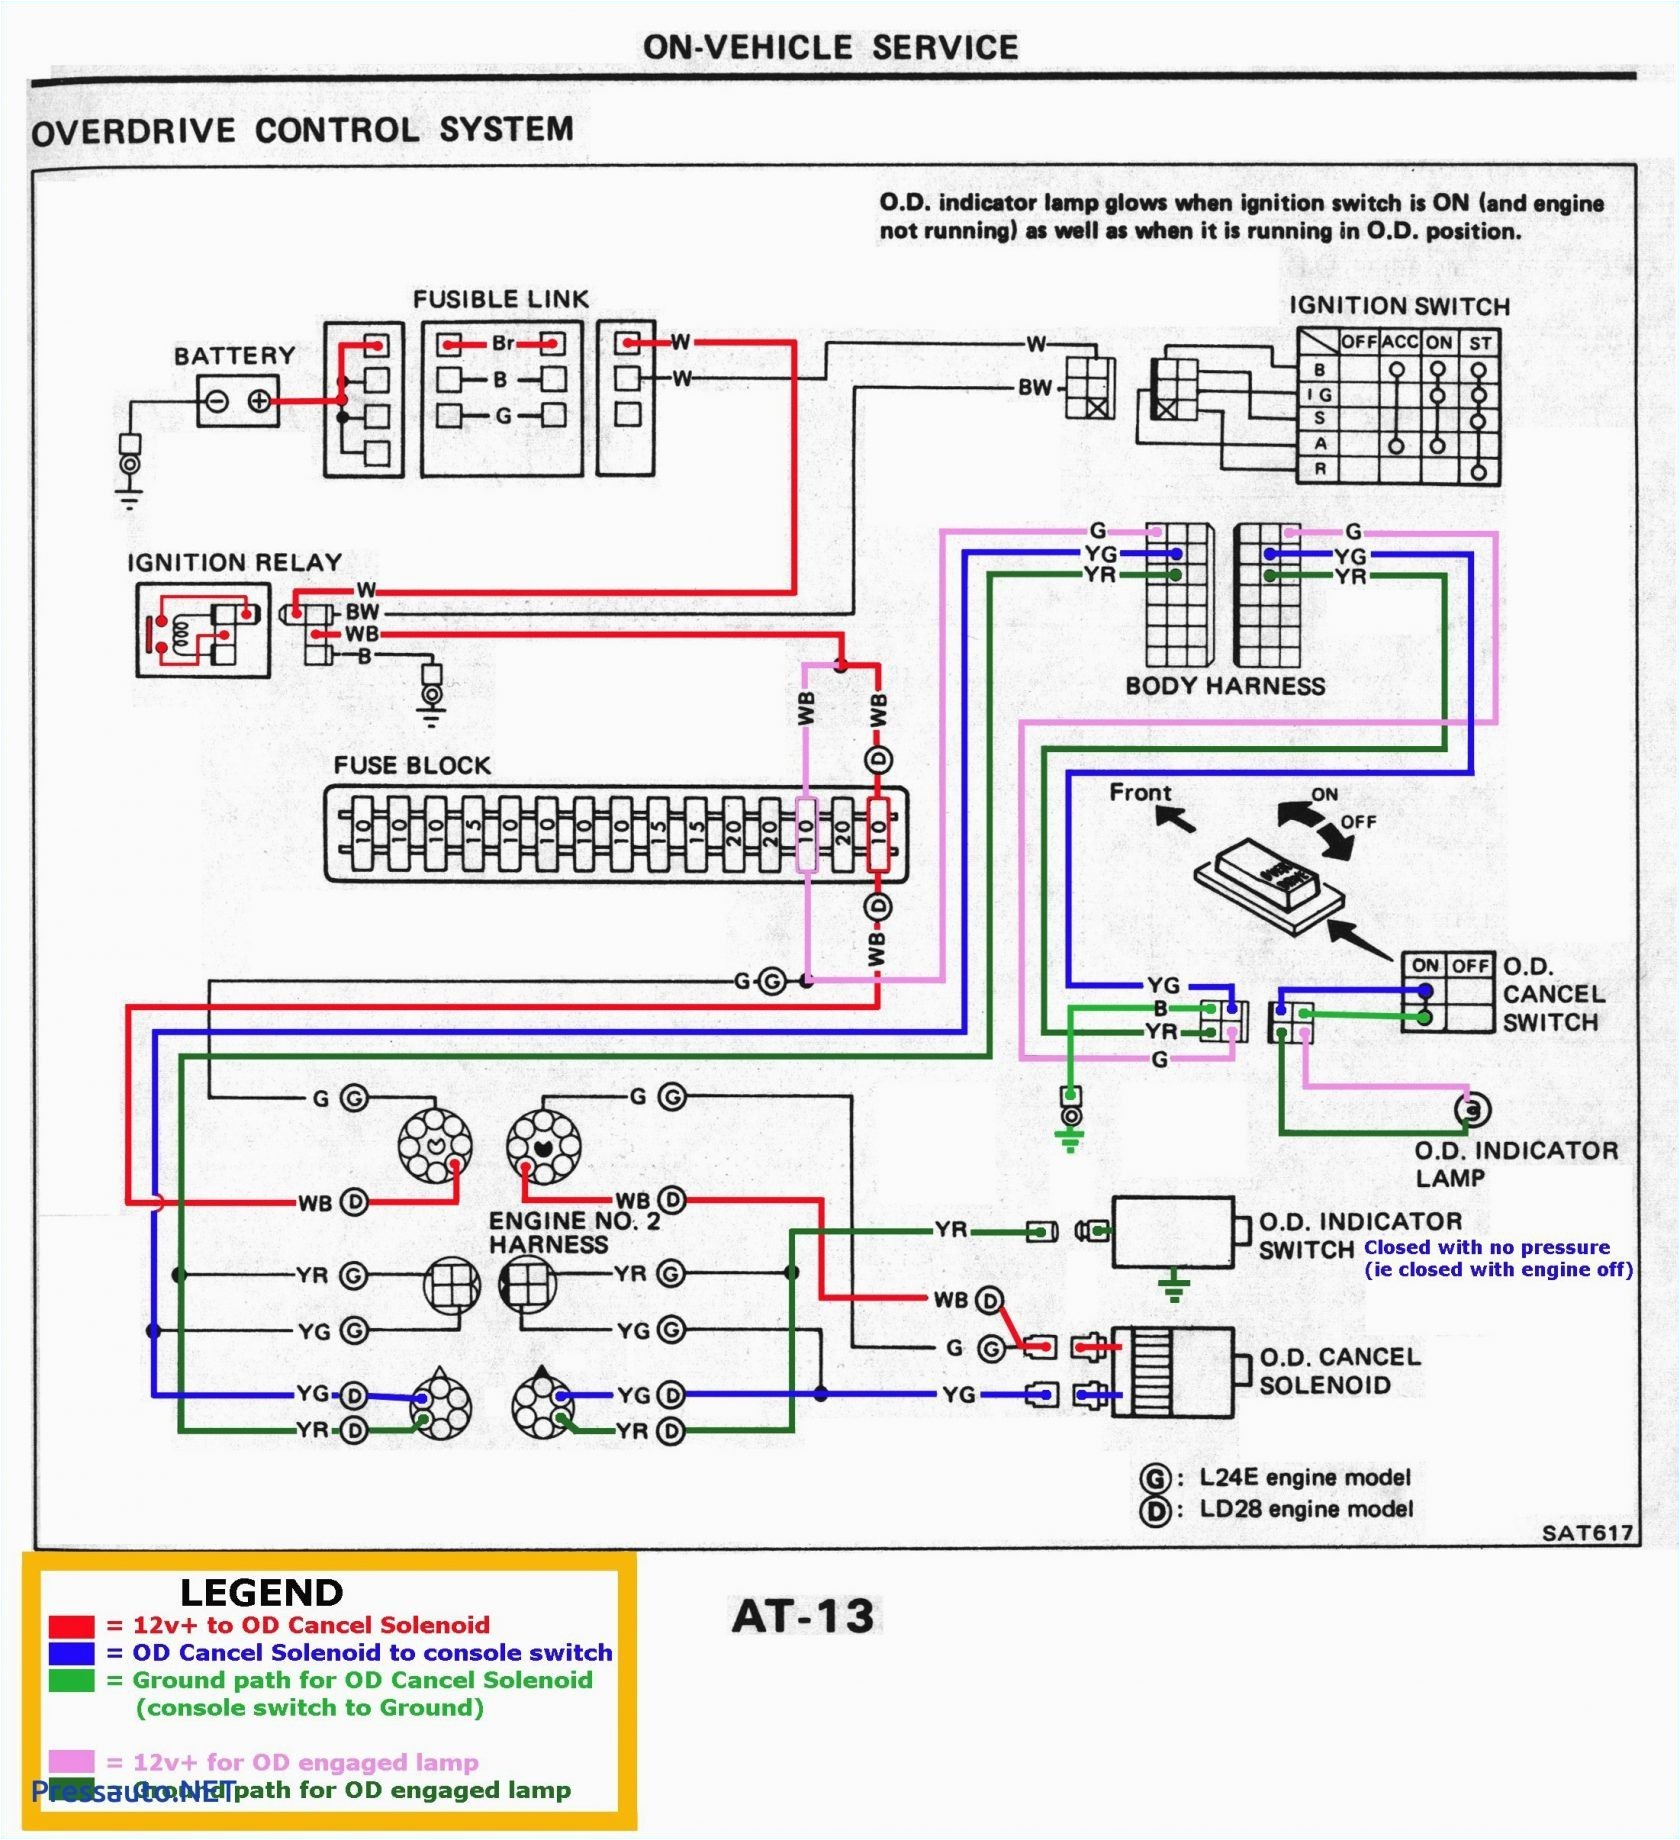 Chrysler Wiring Diagrams Kia sorento Infinity Wiring Diagram Premium Wiring Diagram Blog